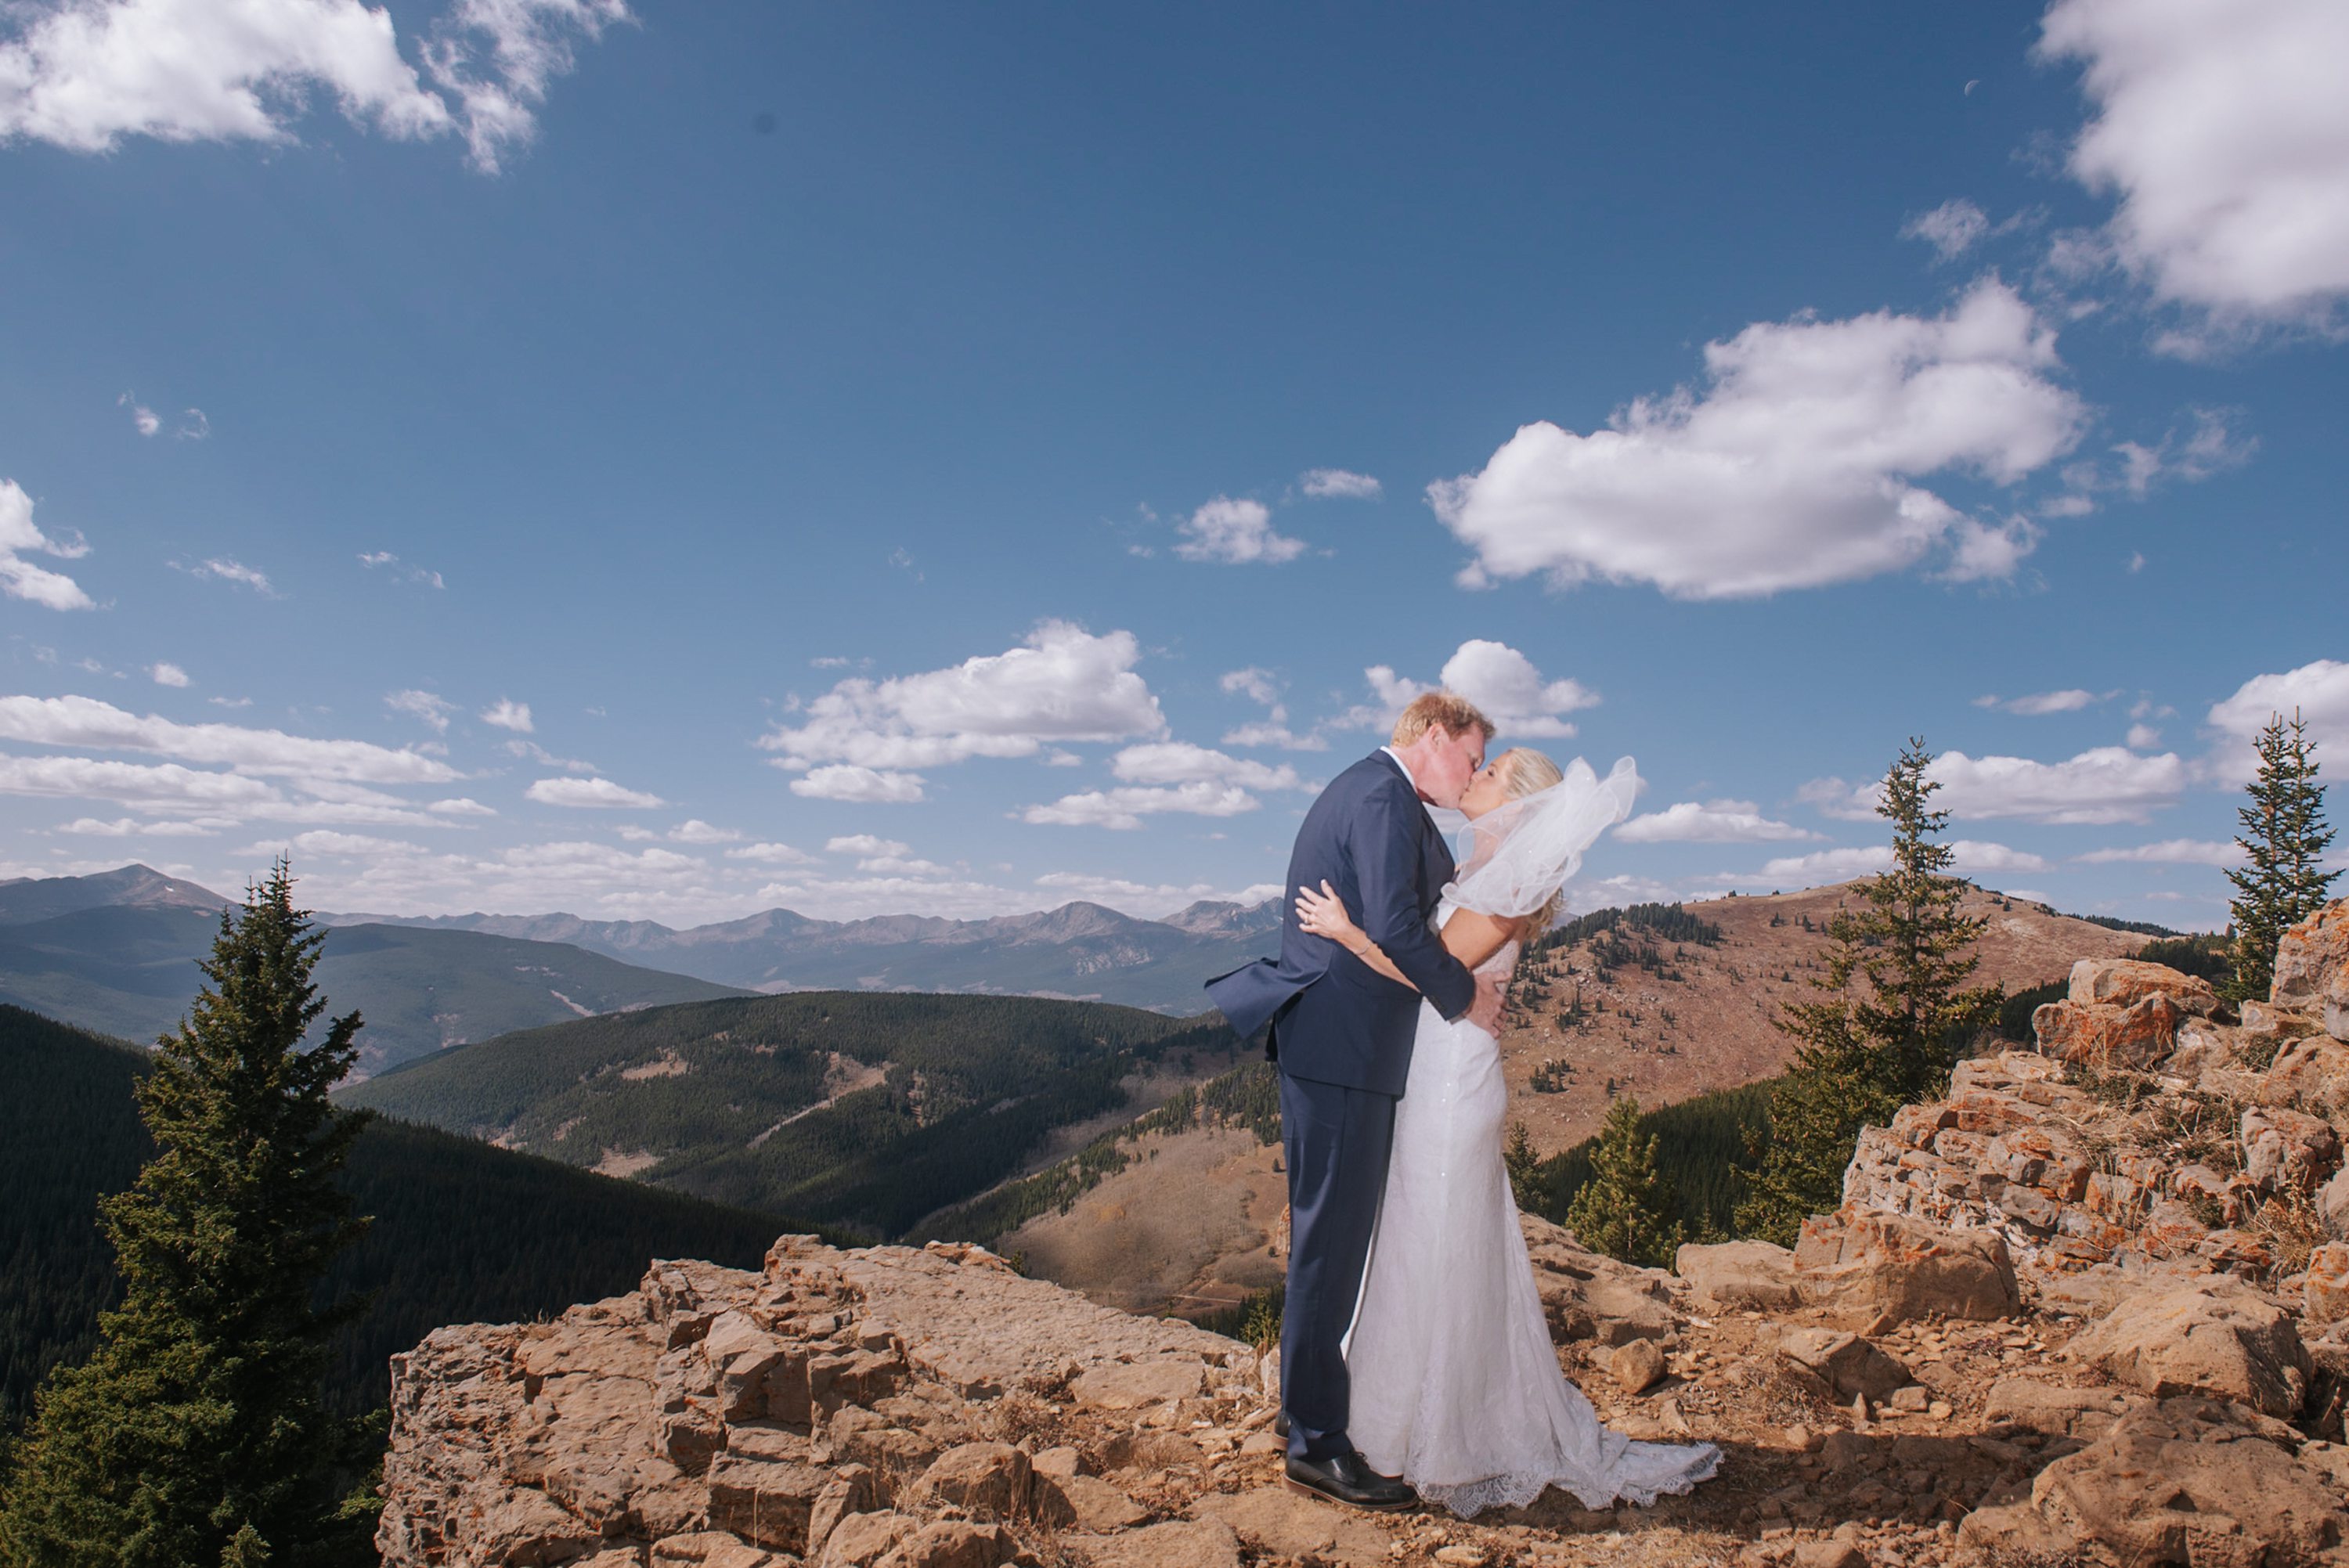  vail wedding photographer, colorado mountain wedding